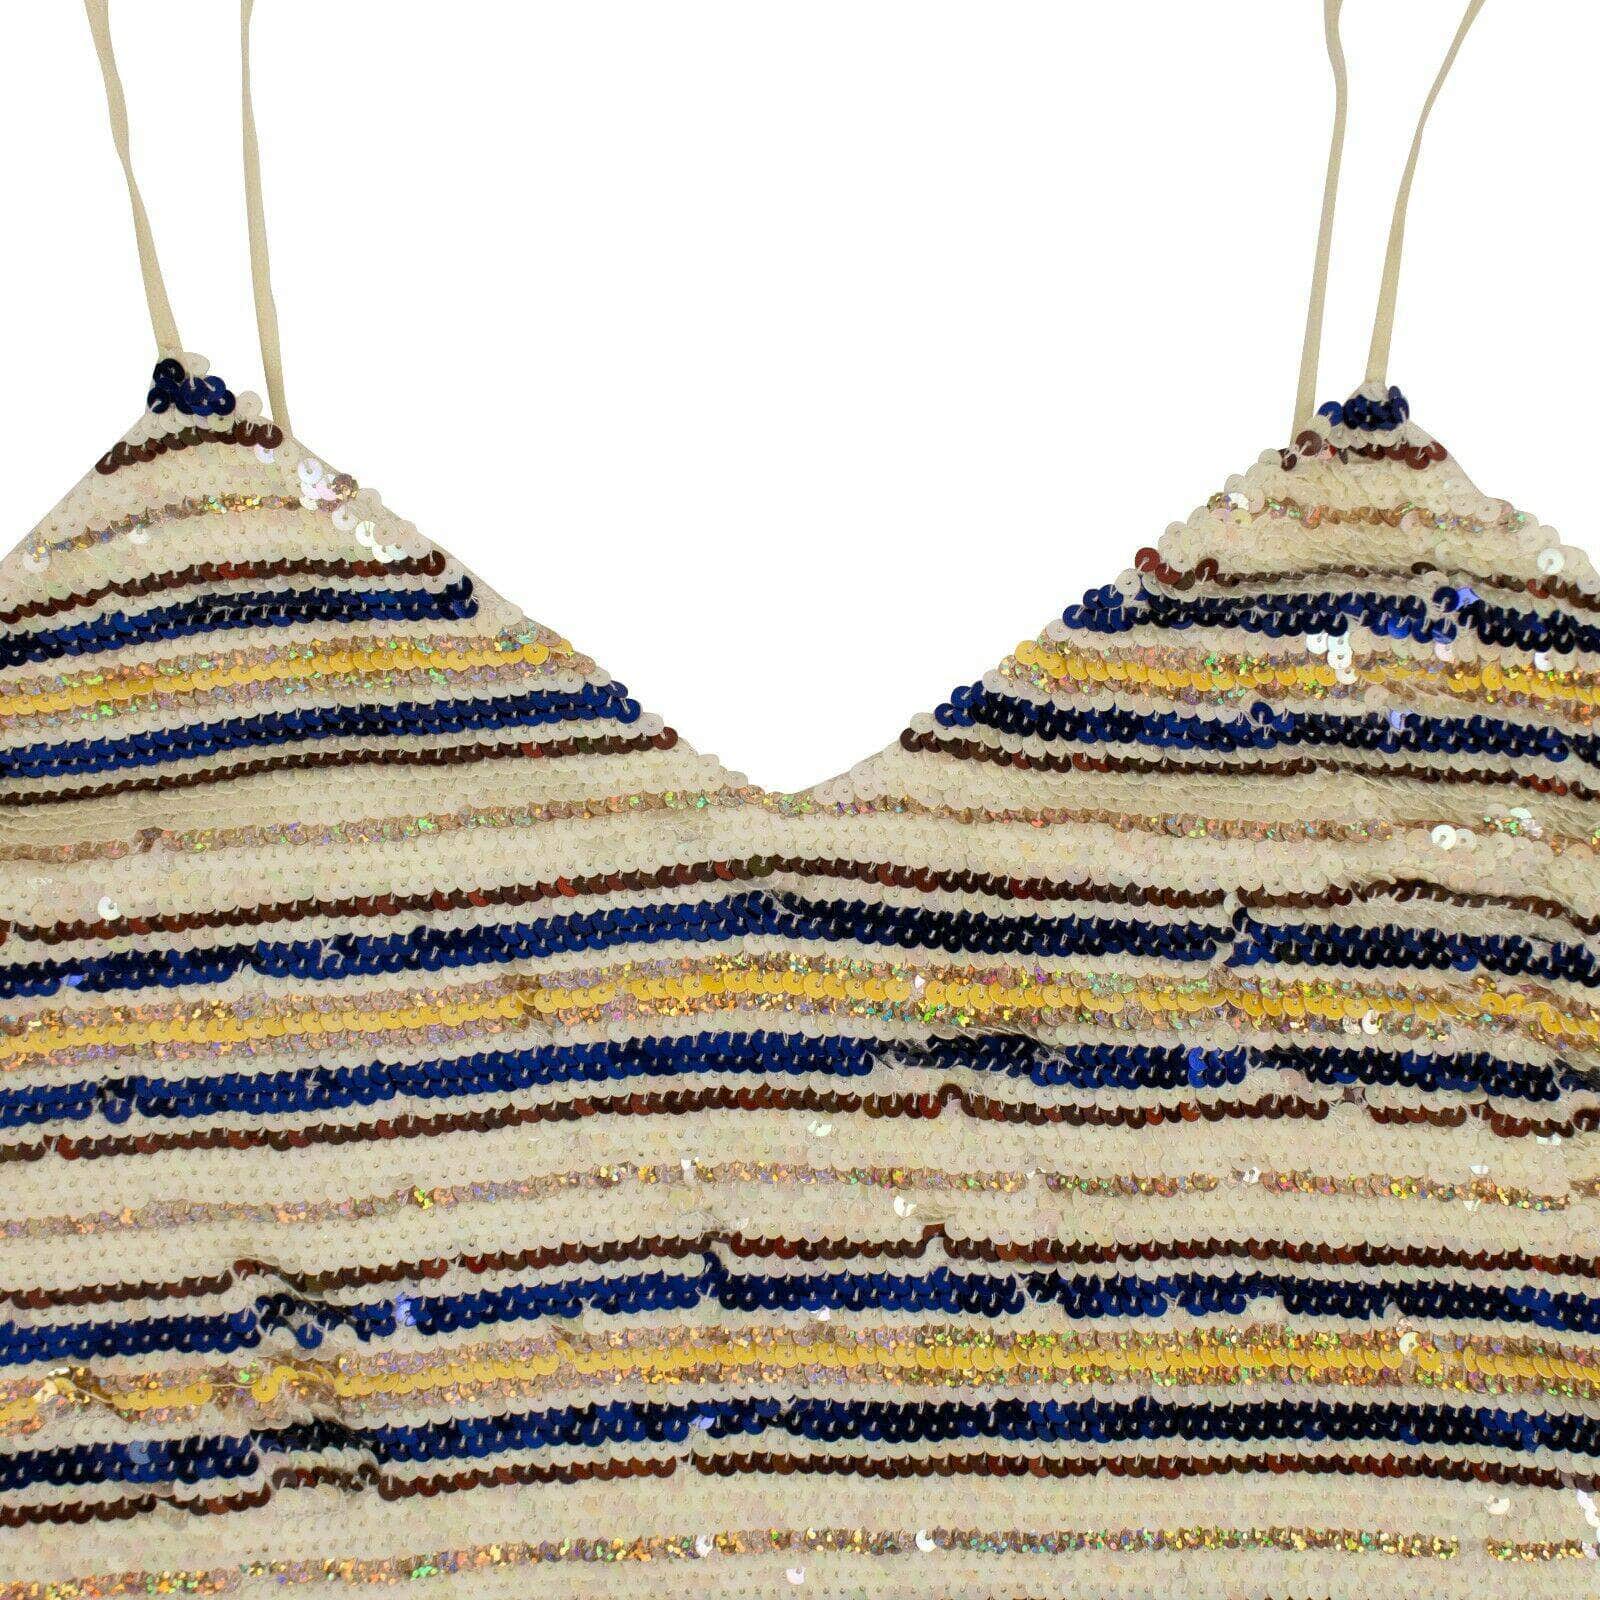 Ashish Women's Dresses S Sequin Striped Mini Slip Dress - Cream And Multicolored 69LE-1849/S 69LE-1849/S